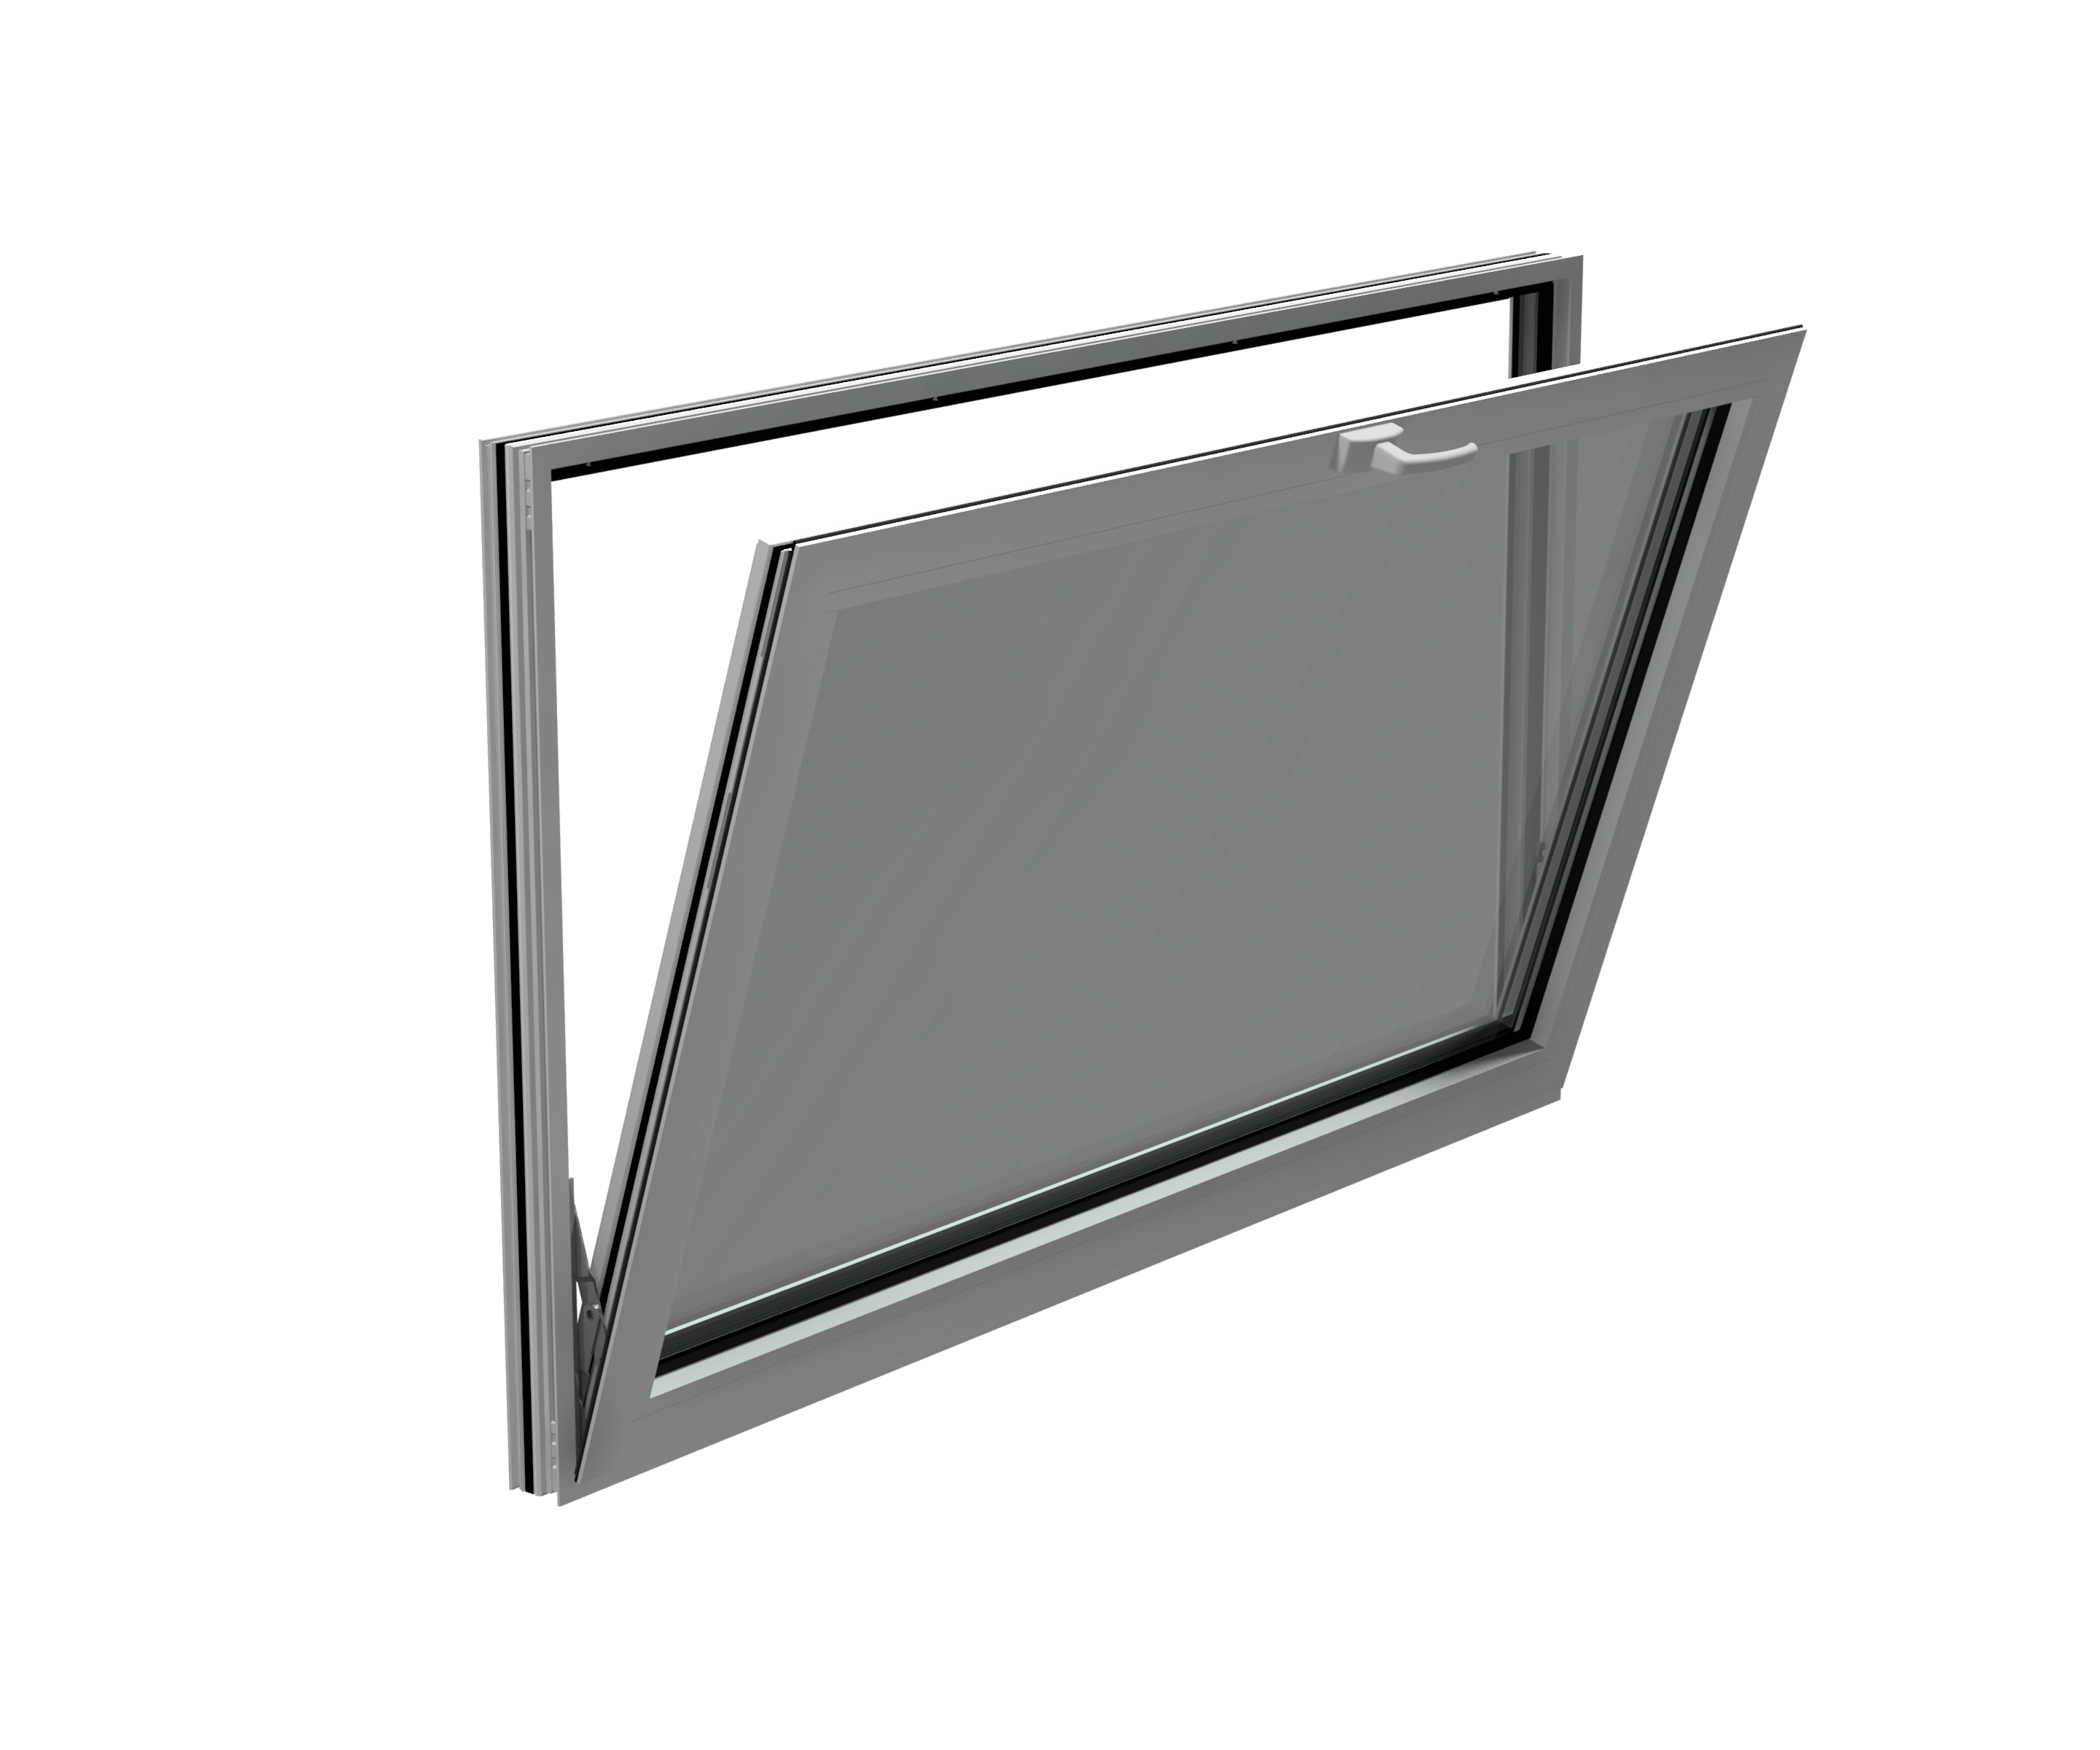 Fenêtres à auvent en aluminium - Fenêtres à auvent en aluminium - Produits  - Zhejiang Keyco Technology Group Co., Ltd